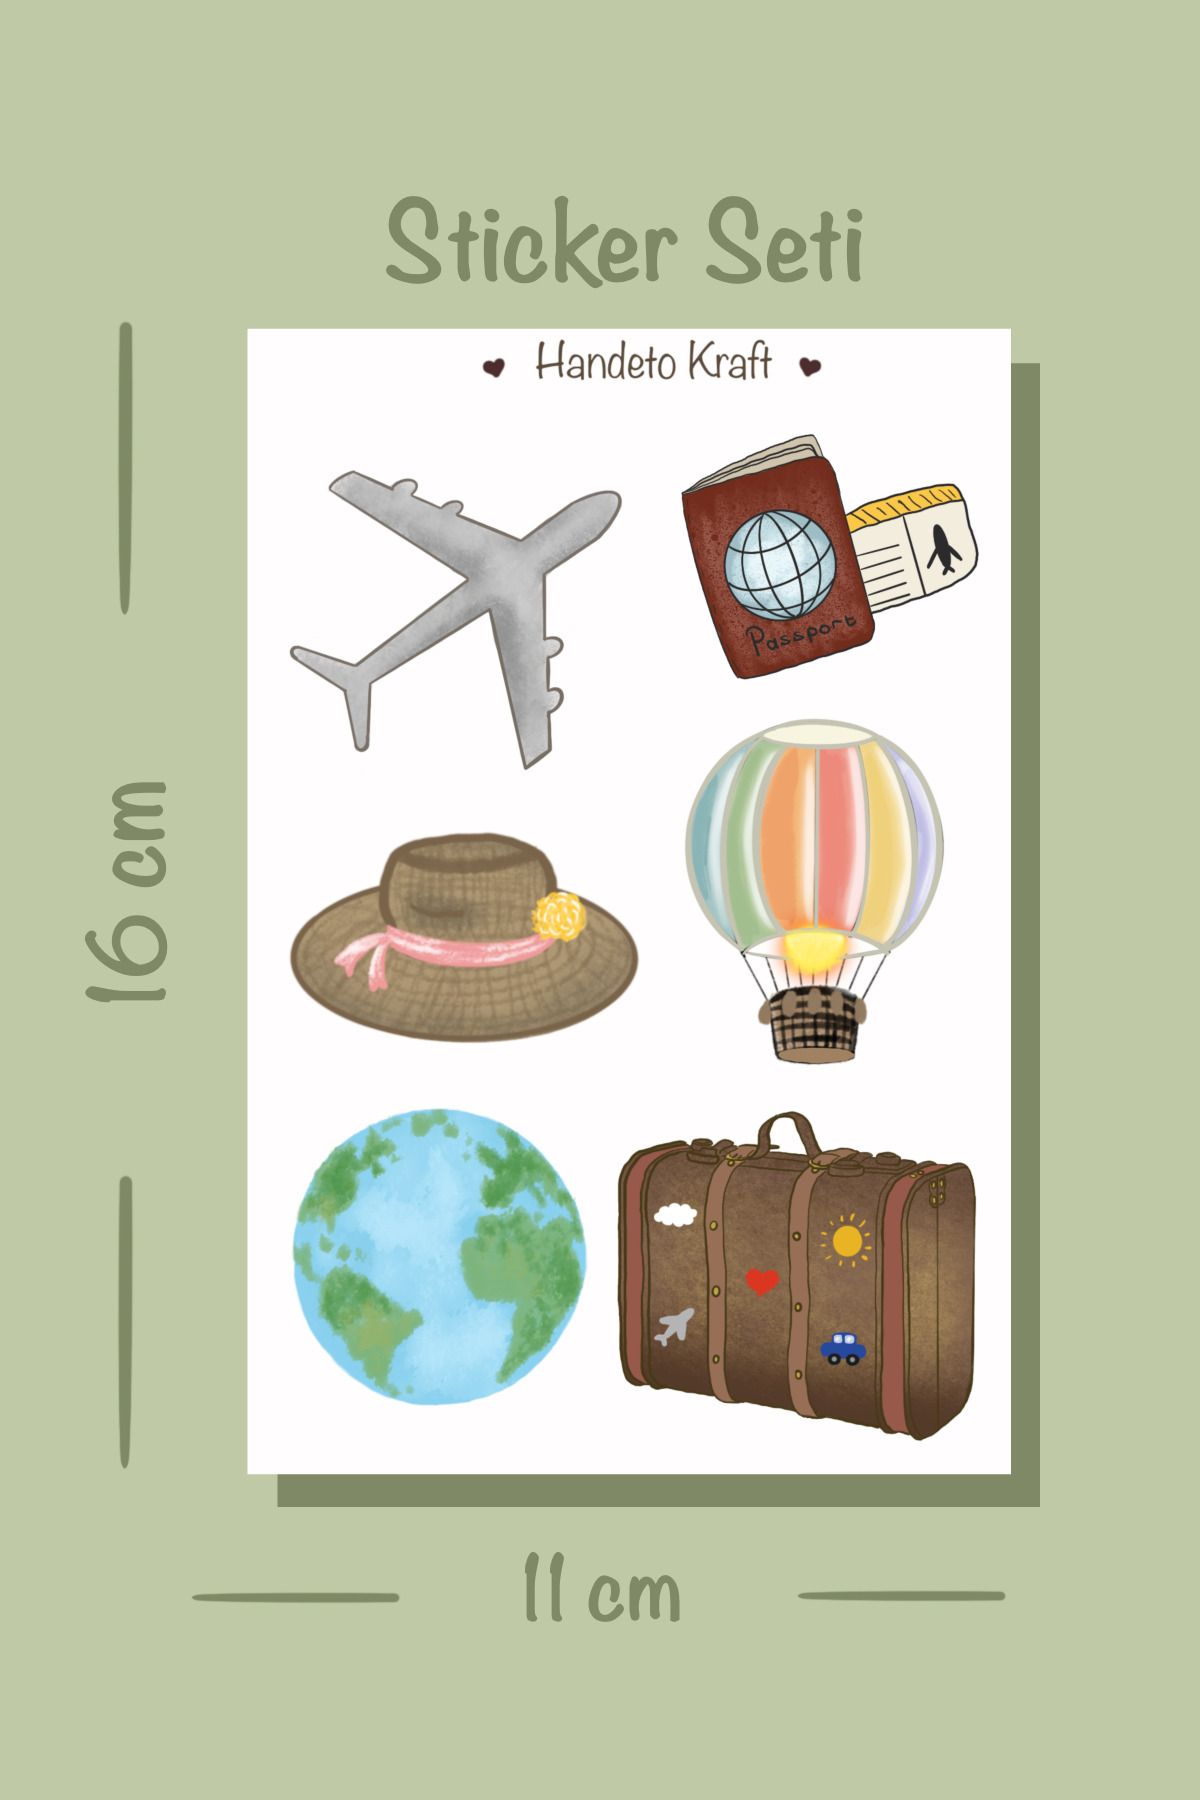 Handeto Kraft Seyahat Temalı Valiz Sticker Seti (11X16 CM, PLASTİK YAPIŞKANLI KAĞIT, VALİZ, LAPTOP, TELEFON)